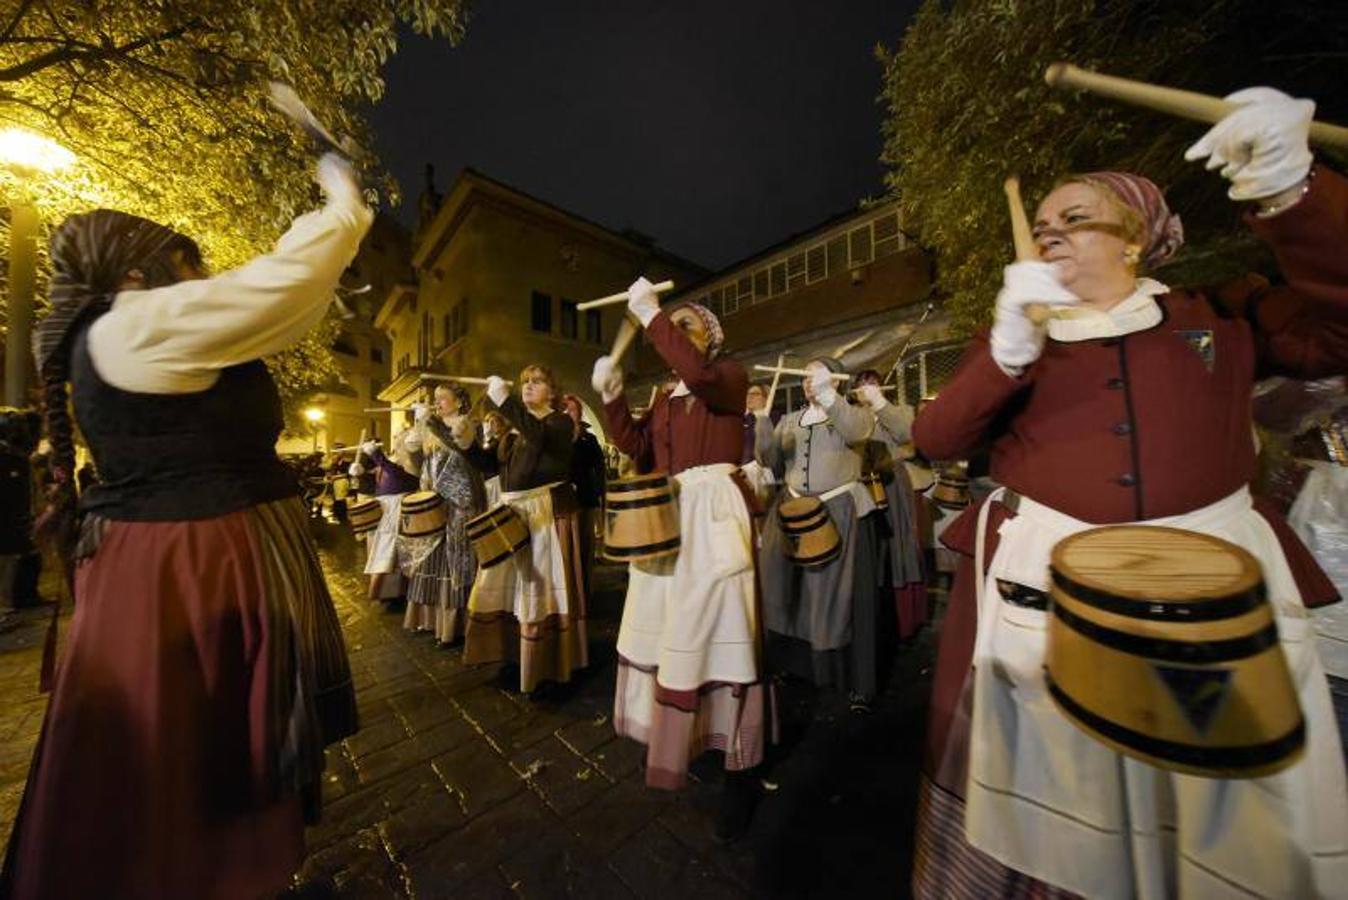 La Tamborrada Loiolatarra desfiló por las calles de San Sebastián con alegría y haciendo sonar los tambores. 